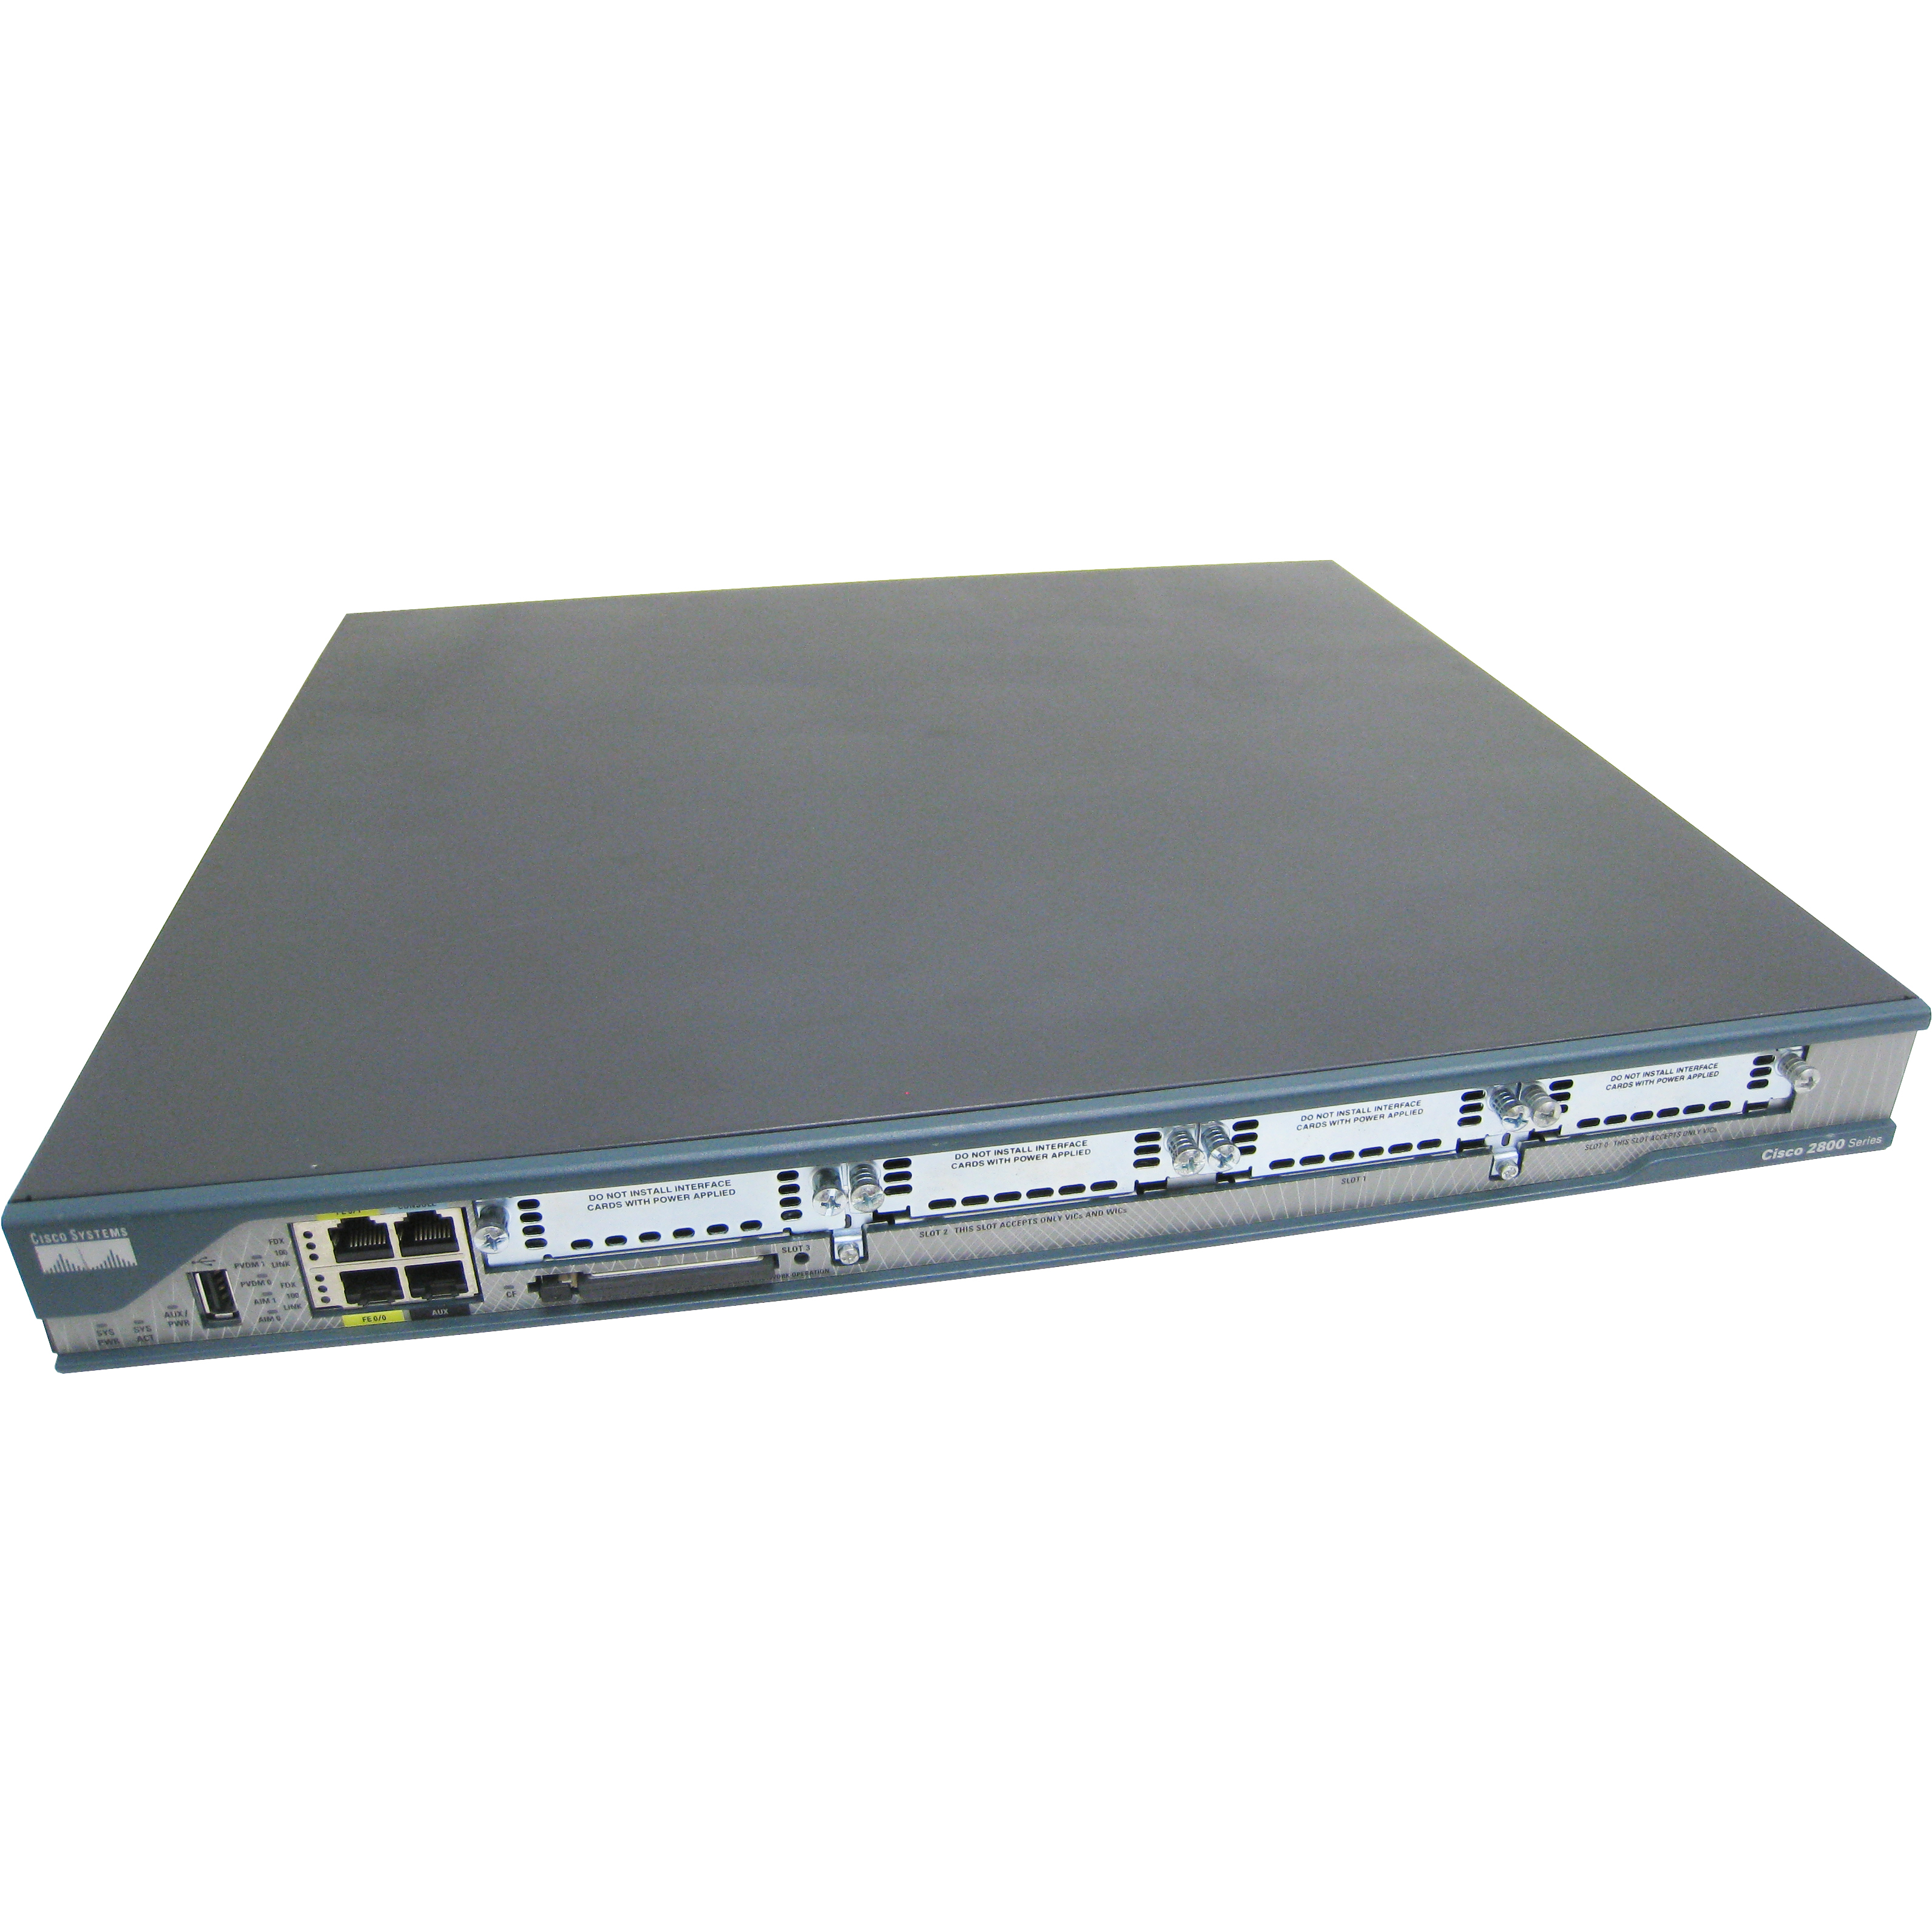 Cisco C2801-VSEC/K9